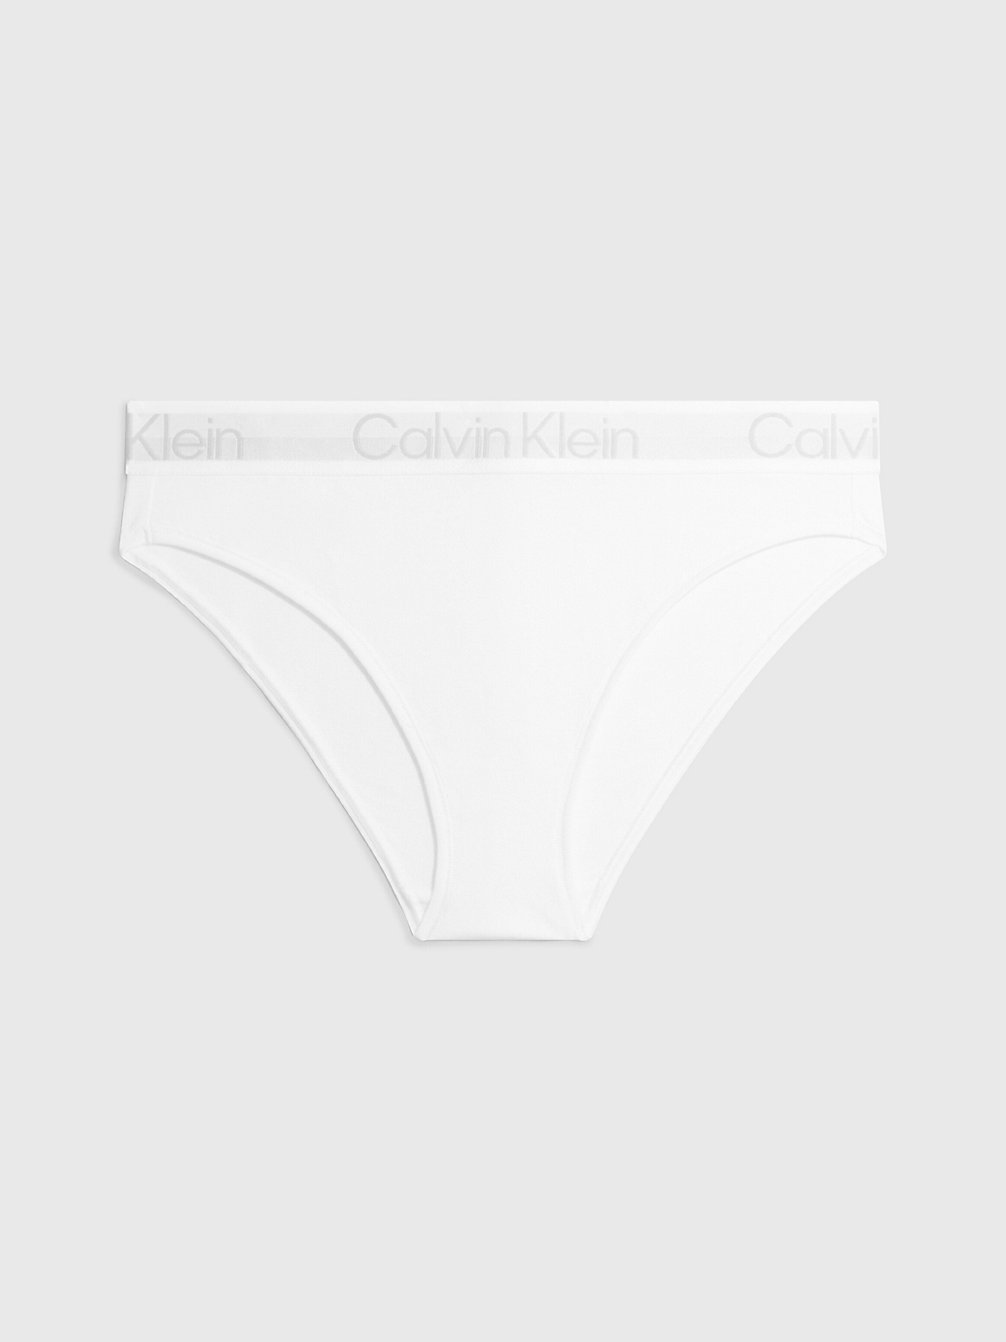 WHITE > Figi - Modern Structure > undefined Kobiety - Calvin Klein